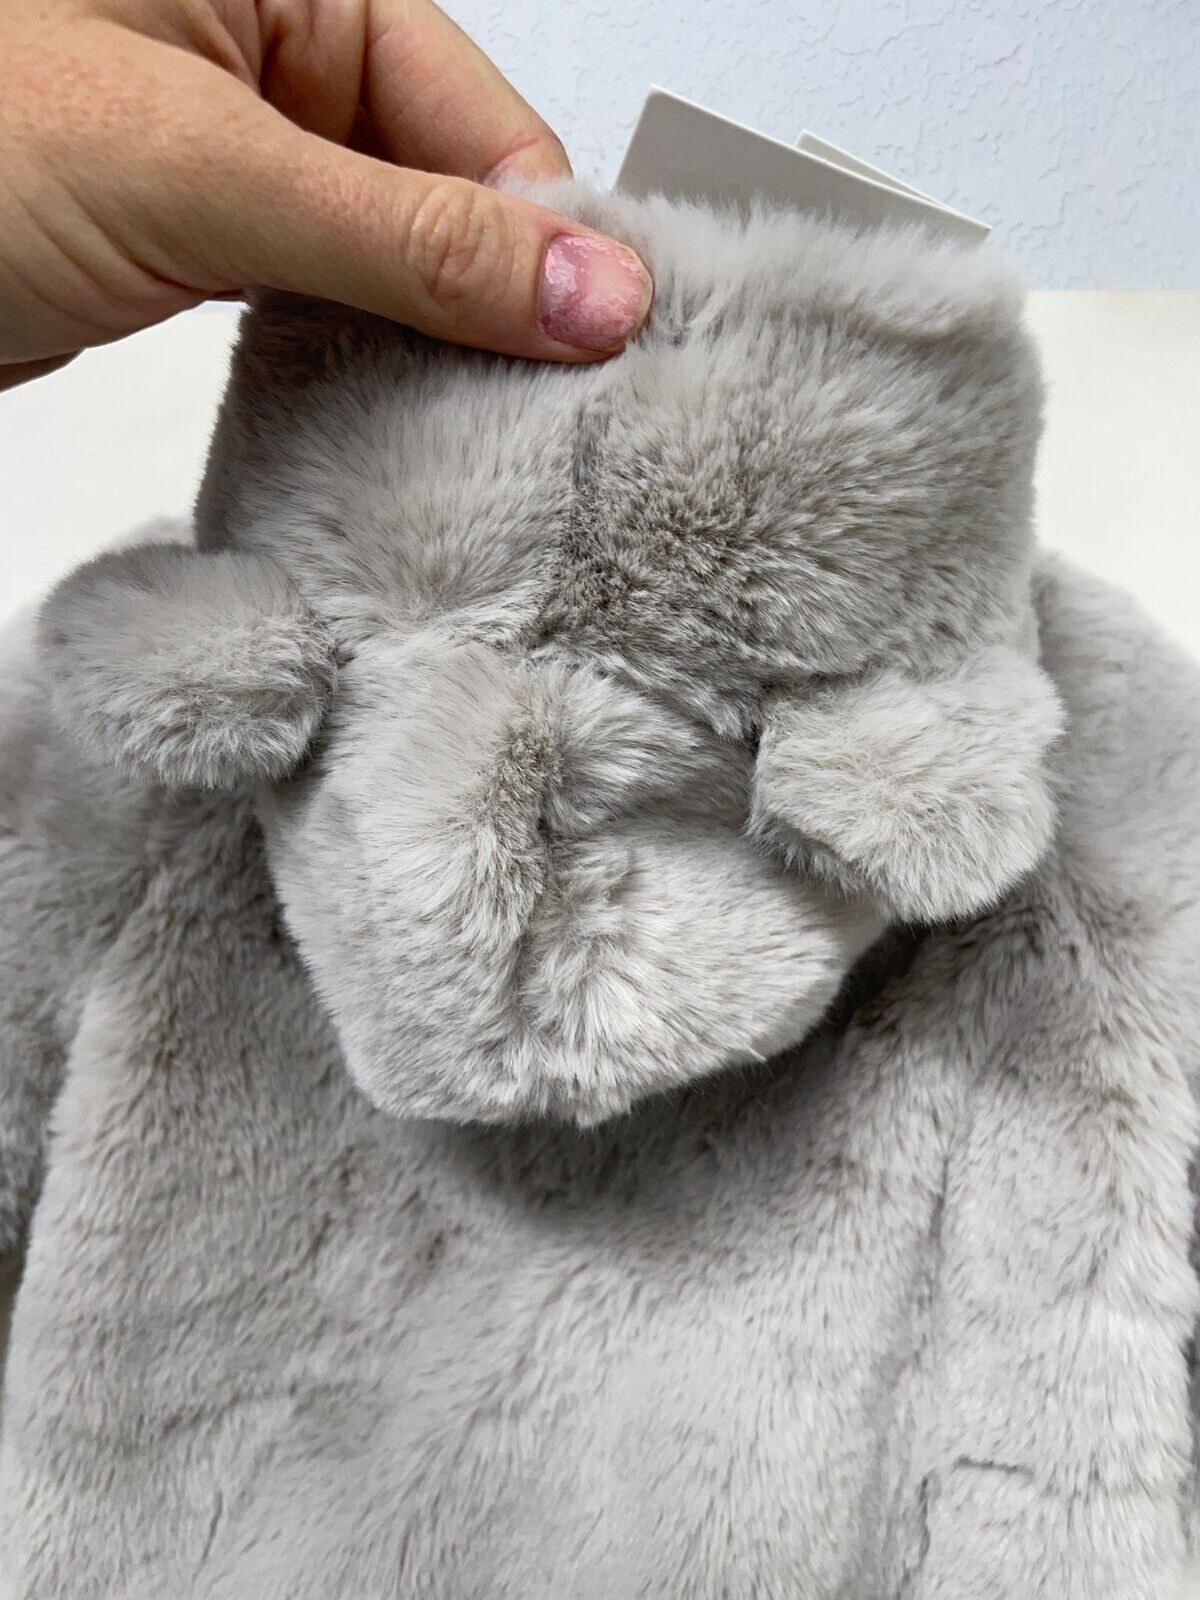 Zara Baby Faux Fur Romper 1 Piece Teddy Bear Hooded Jumpsuit 0248/557 Gray Plush